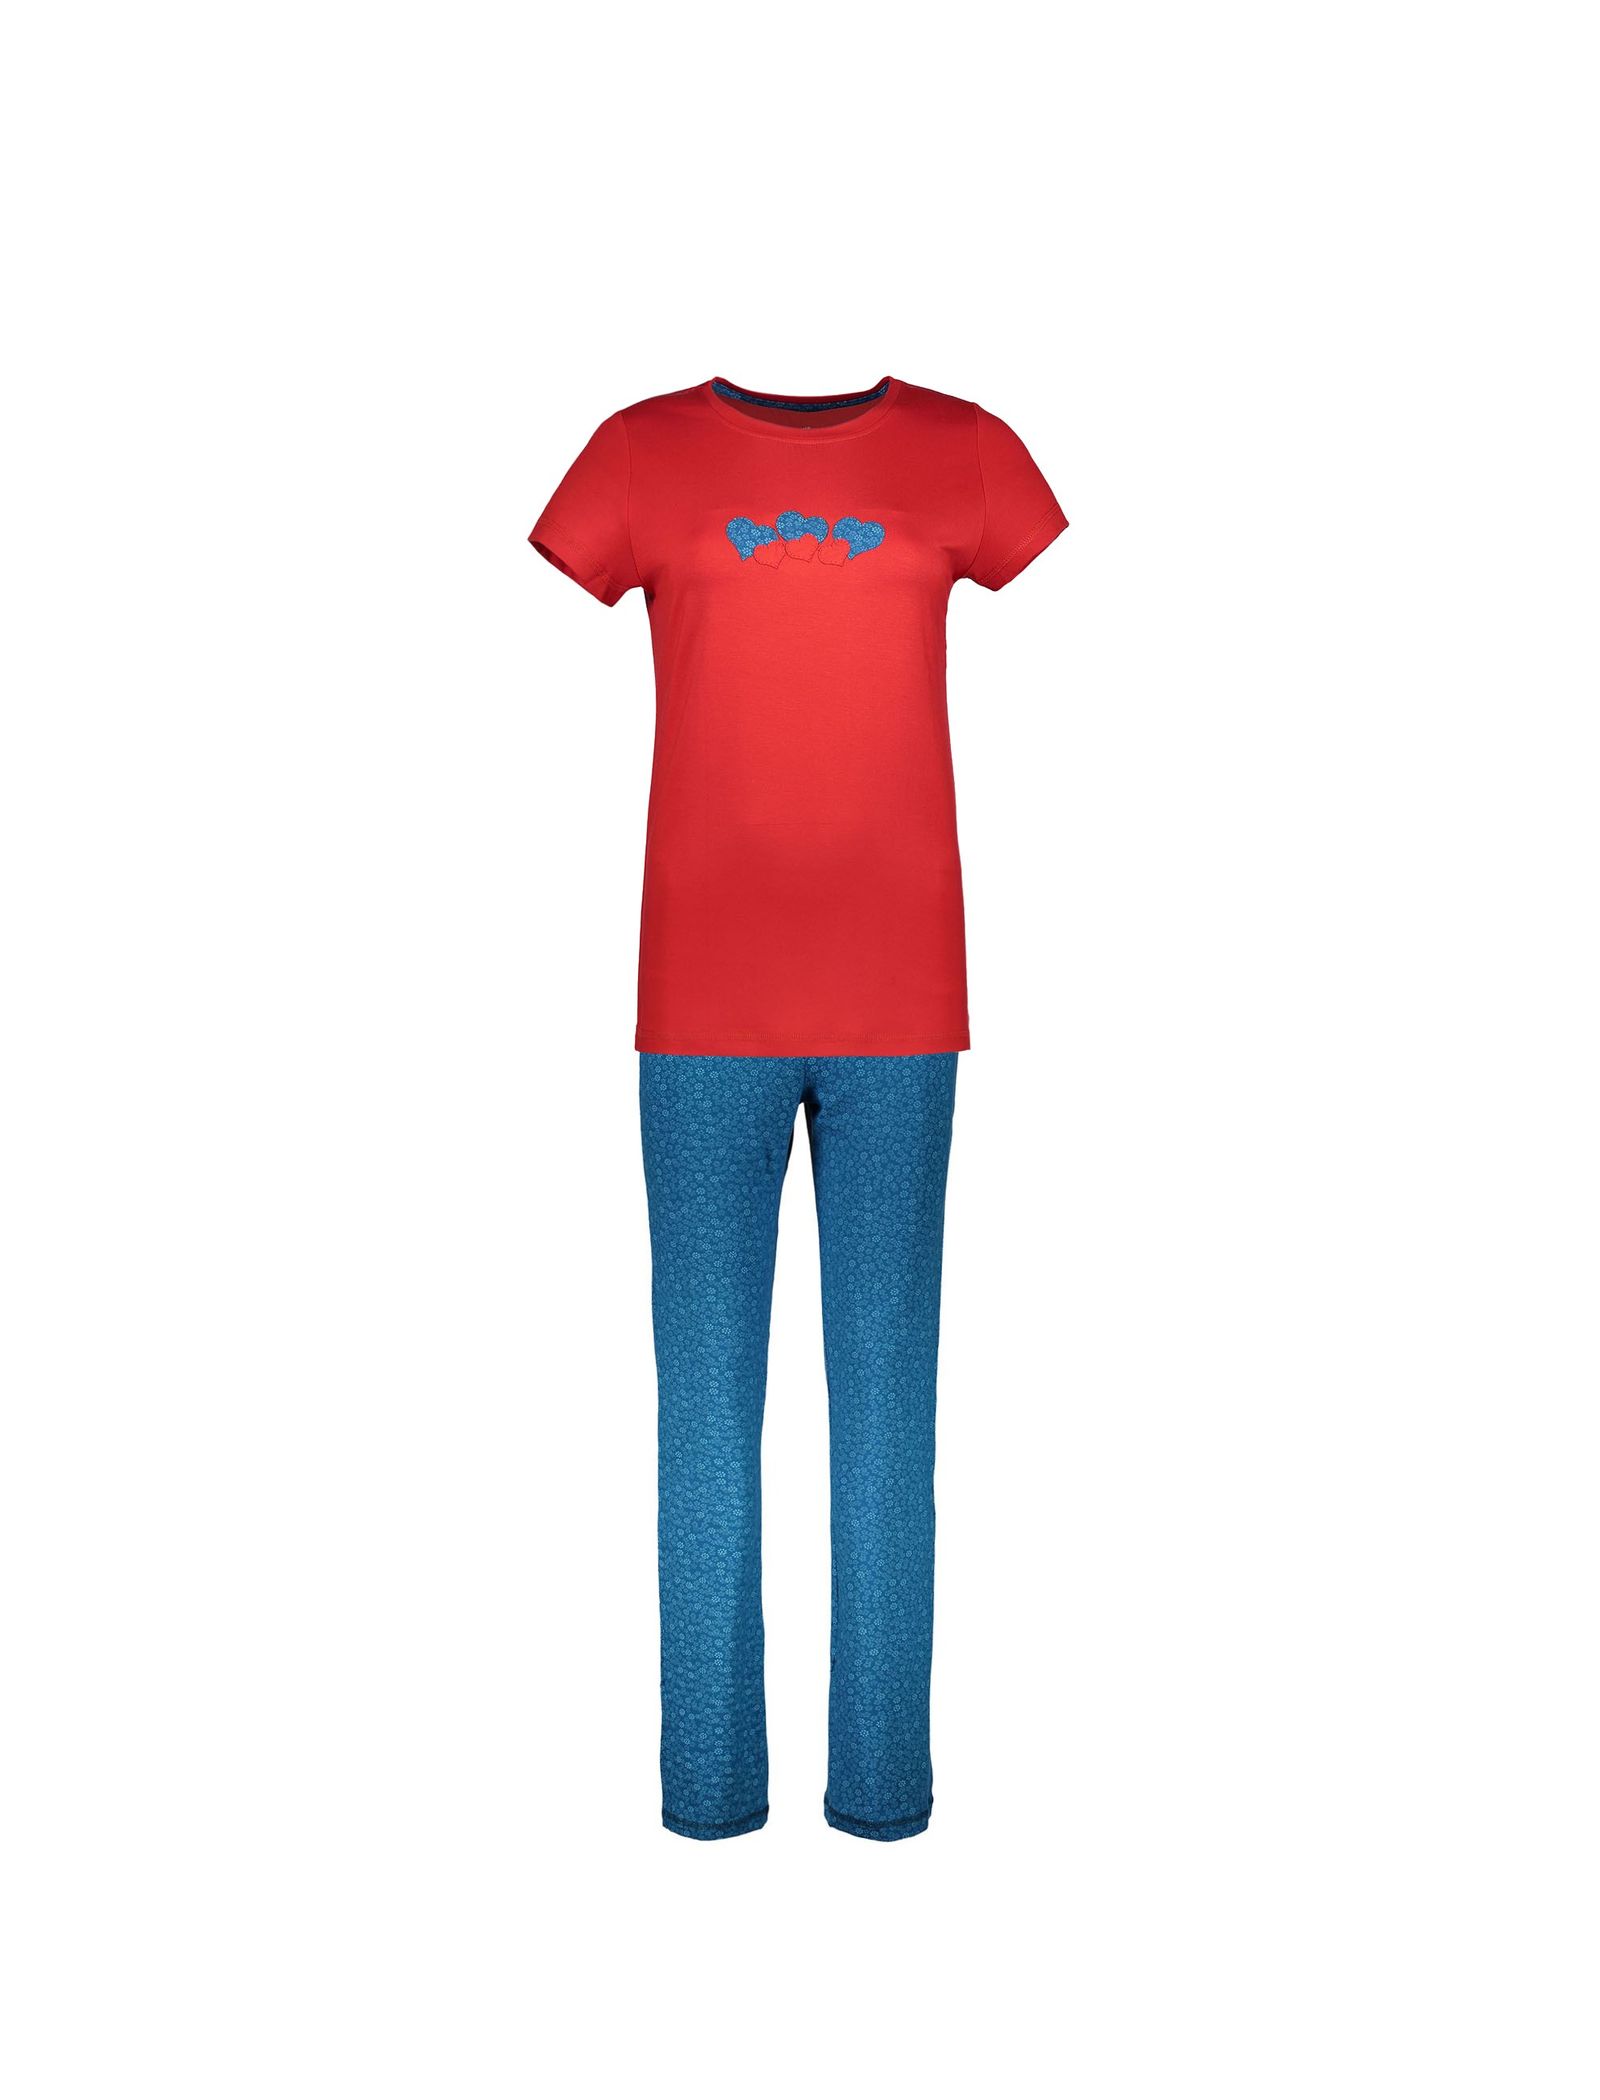 تی شرت و شلوار راحتی ویسکوز زنانه - ناربن - قرمز و آبي - 1